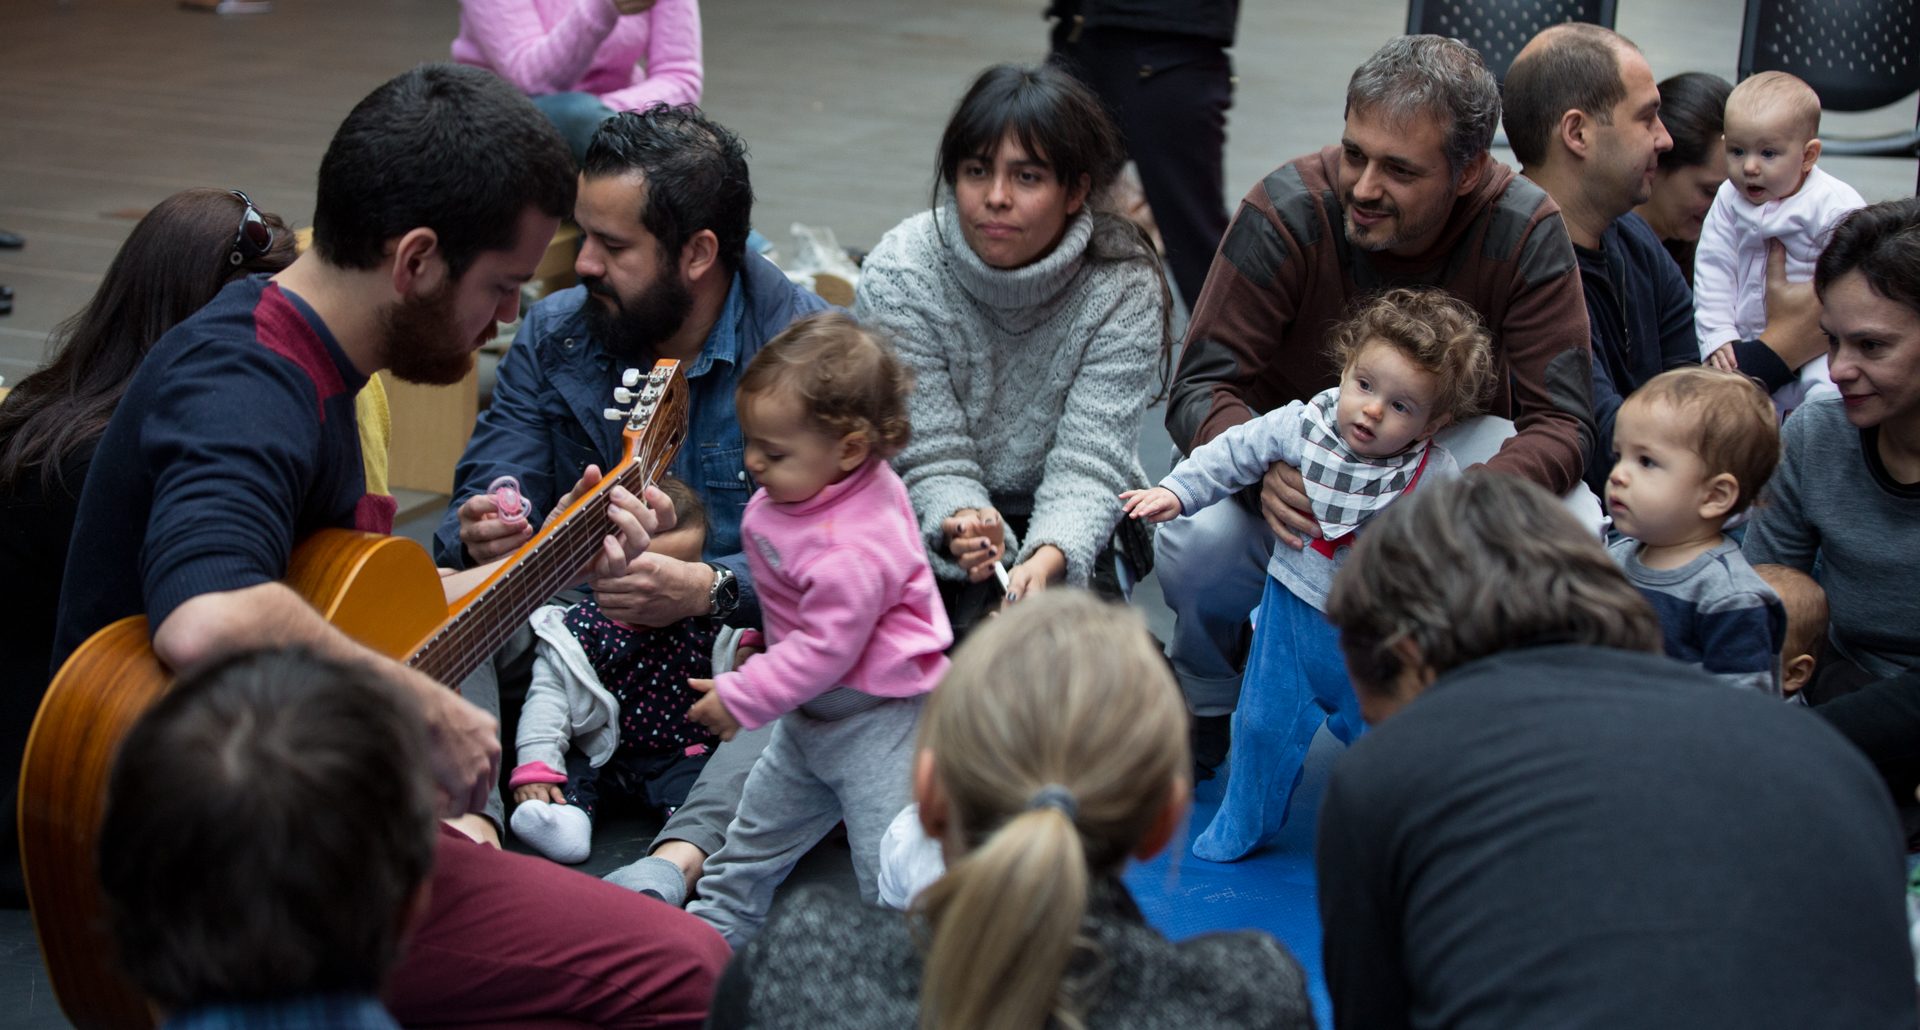 Do lado esquerdo da foto um homem de barba está tocando violão. Ele está sentado no chão assim como os bebês, mulheres e homens que estão diante dele. Alguns bebês estão de pé, sustentados pelos adultos e observam atentamente